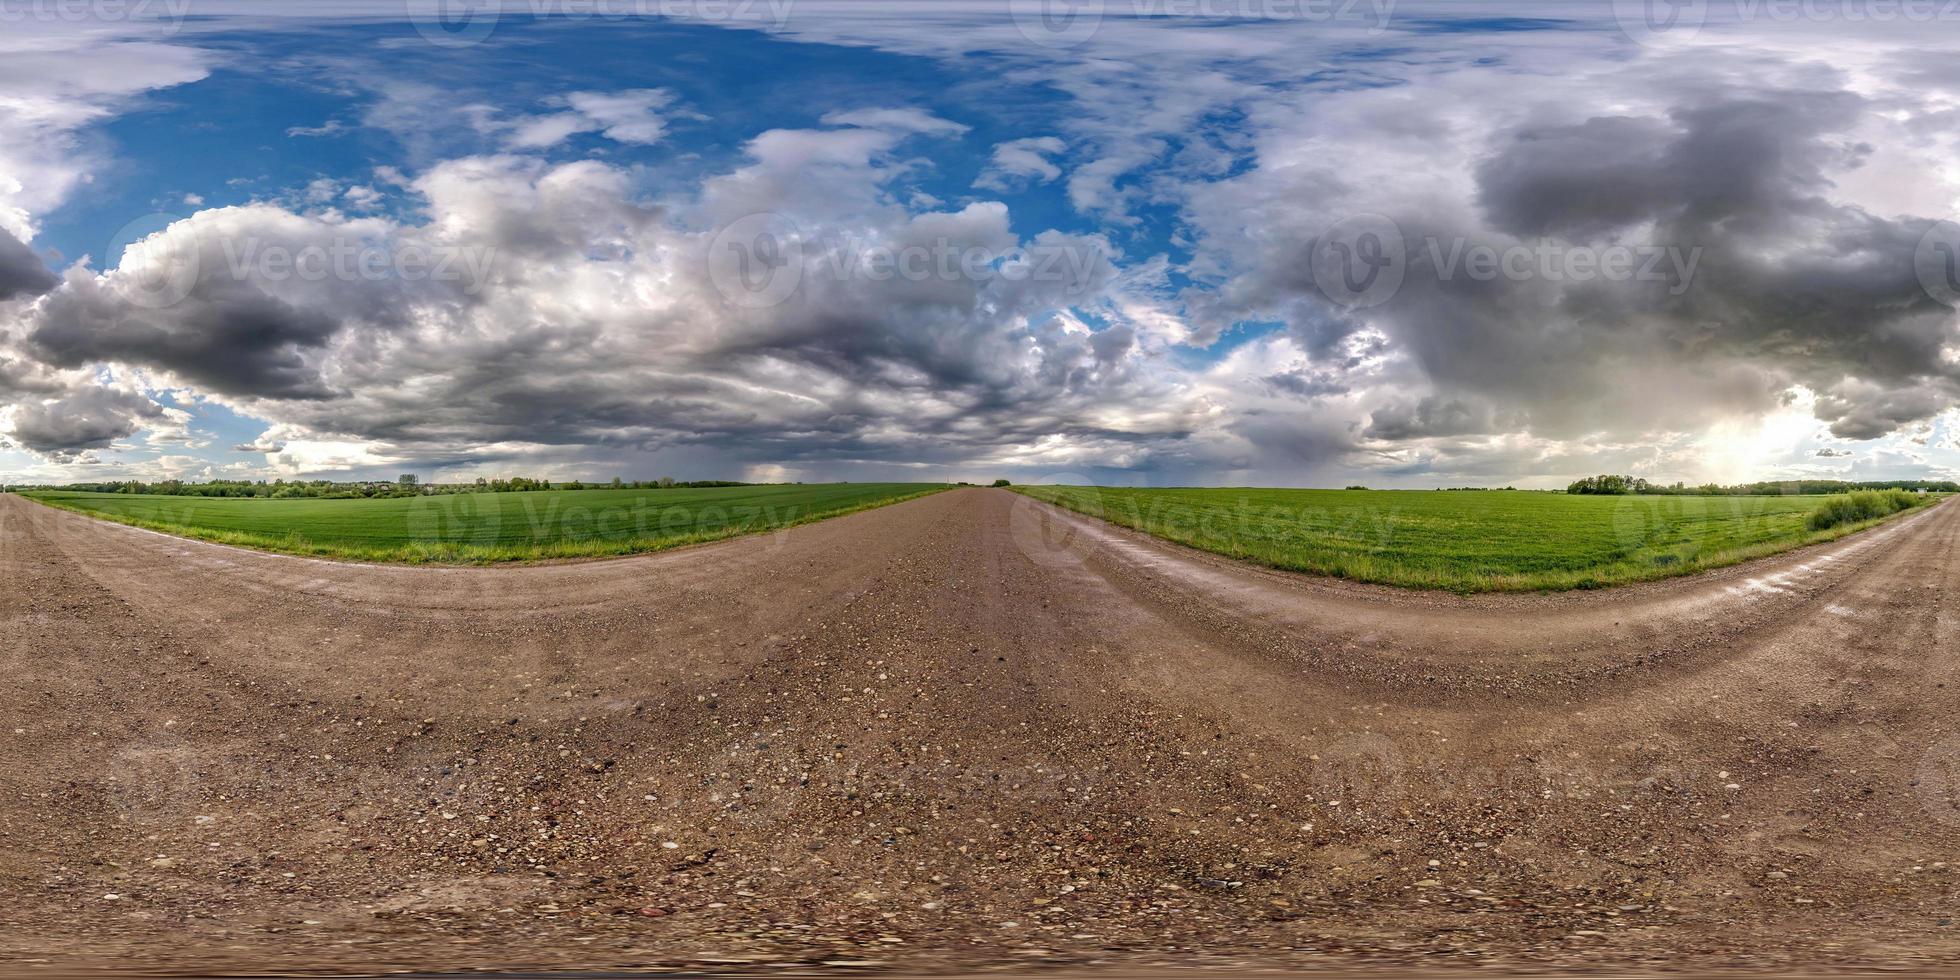 volledig naadloos bolvormig hdri-panorama 360 graden hoekzicht op natte onverharde weg tussen velden in de lente met onweerswolken na regen in equirectangular projectie, klaar voor vr ar-inhoud foto